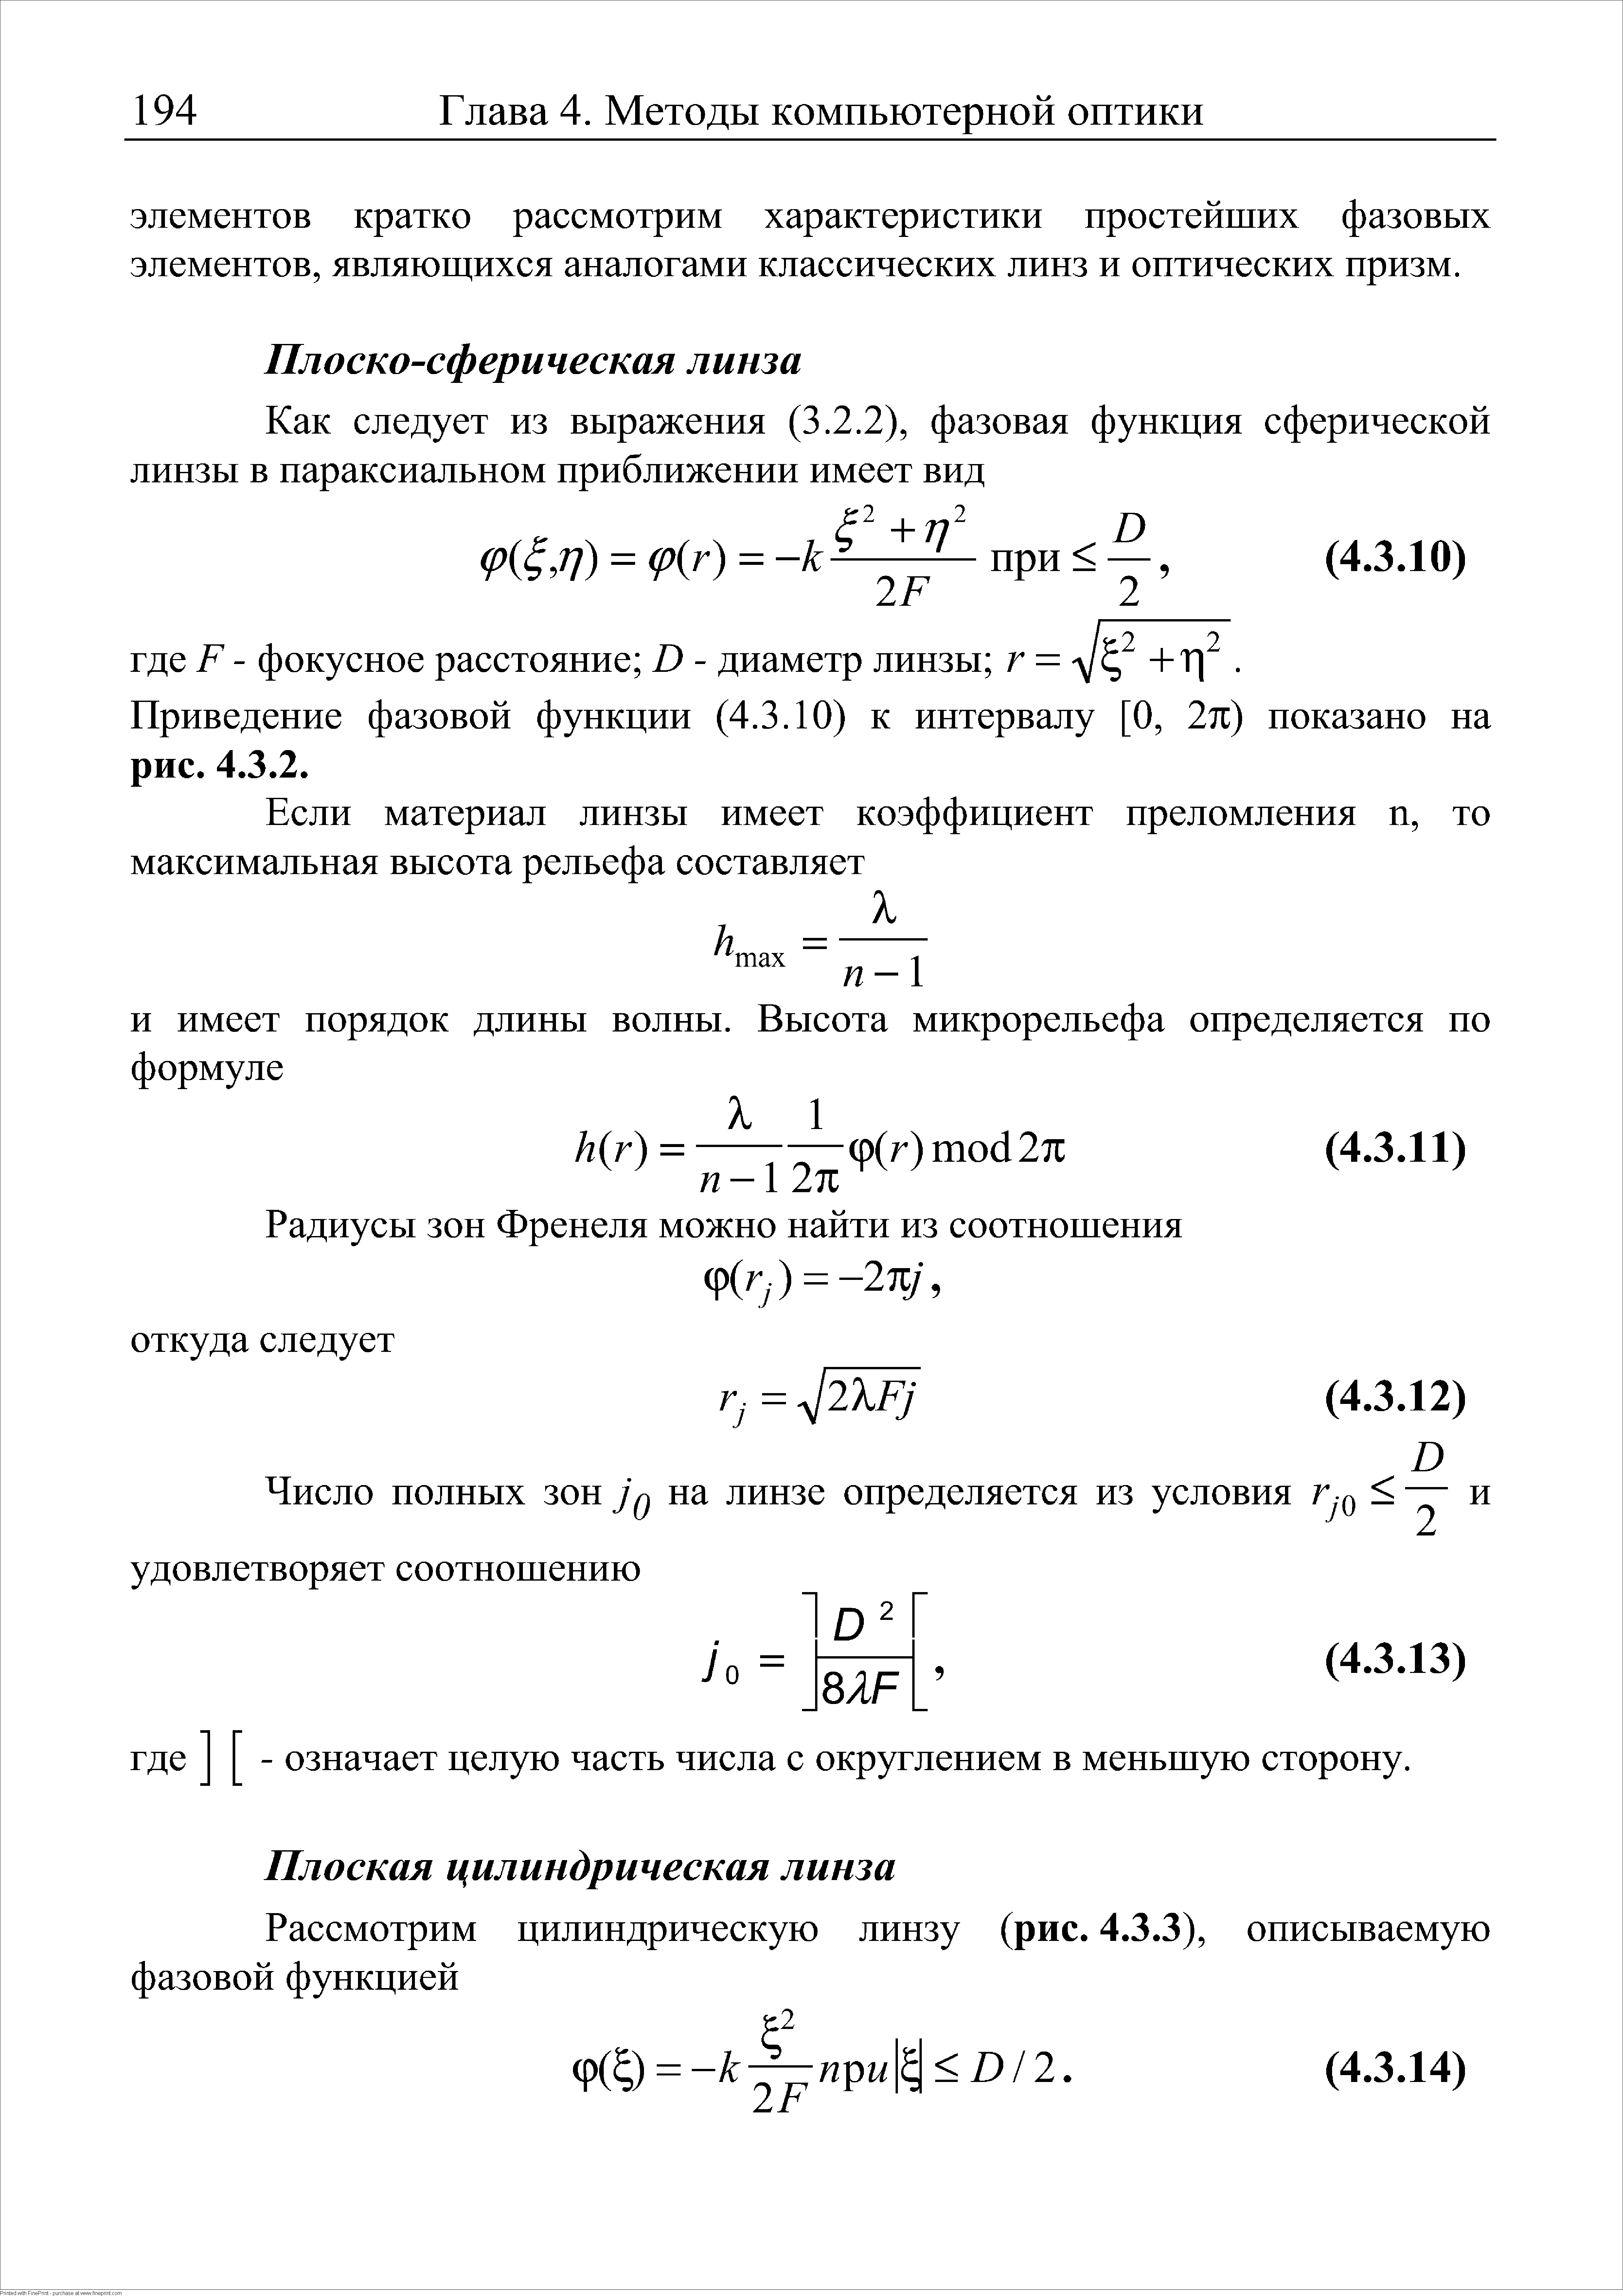 Приведение фазовой функции (4.3.10) к интервалу [О, 2п) показано на рис. 4.3.2.
